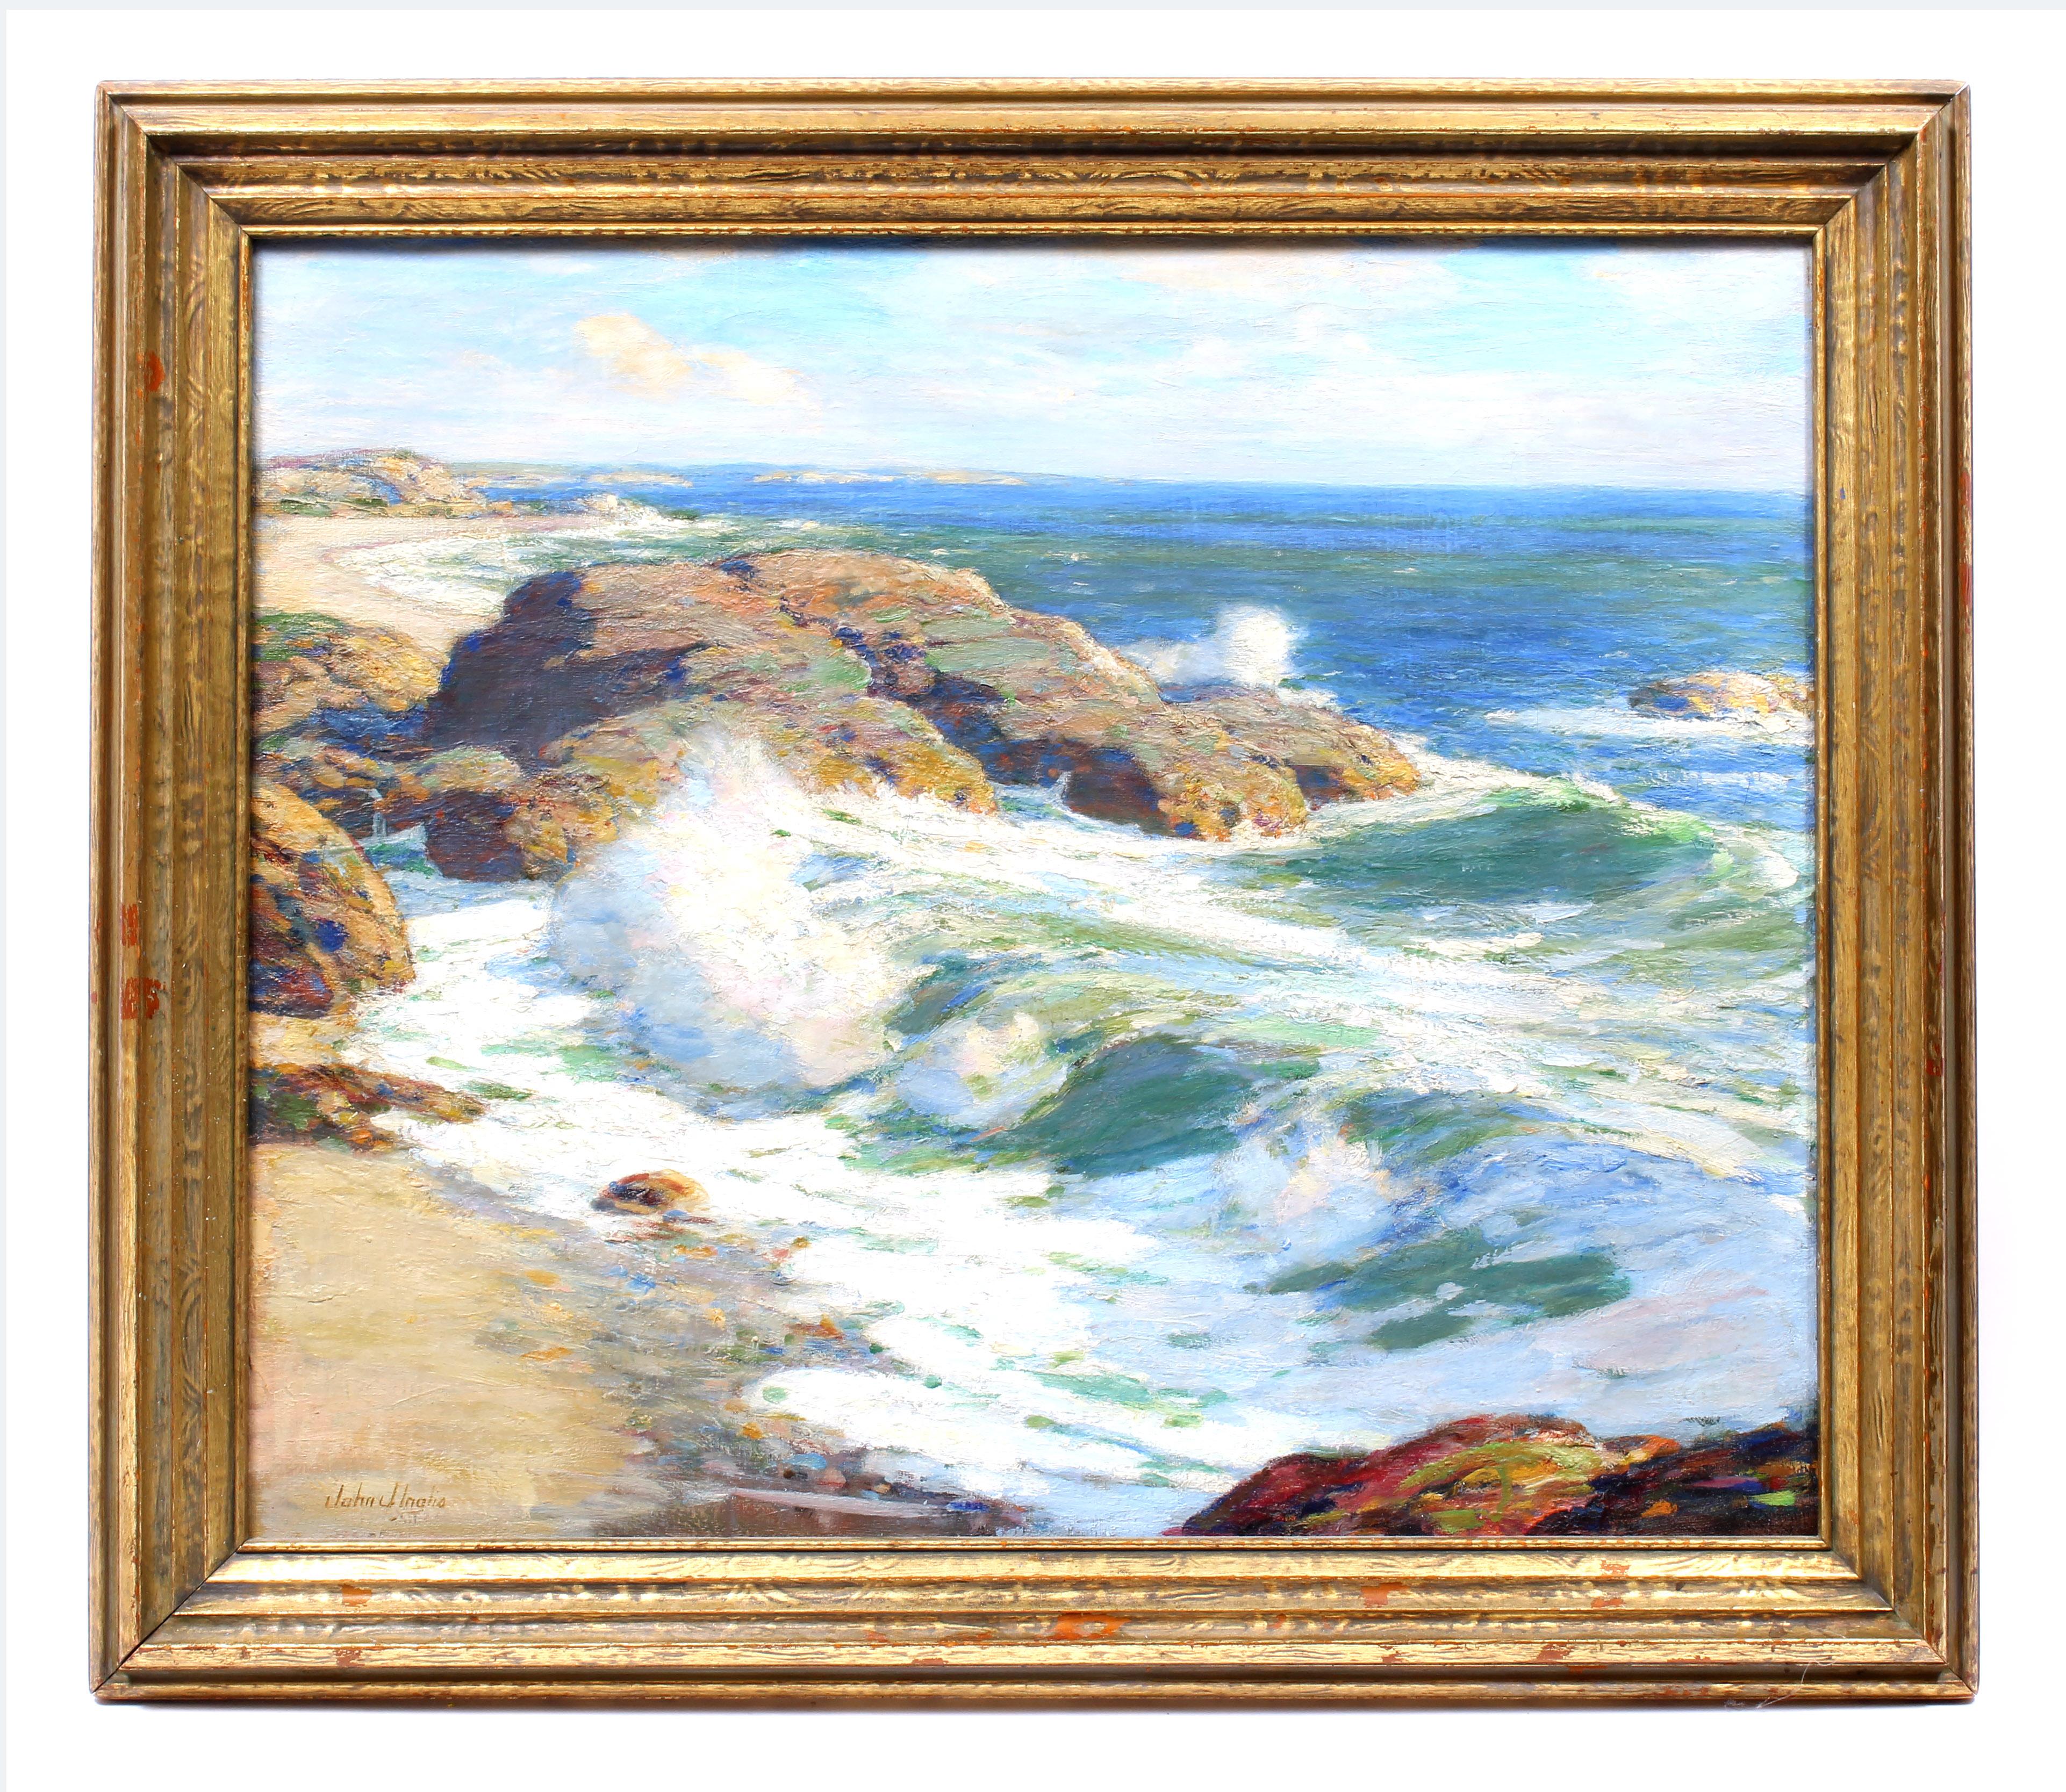 John Inglis Landscape Painting - Antique American Impressionist Irish Oil Painting Coastal Ocean Original Gold